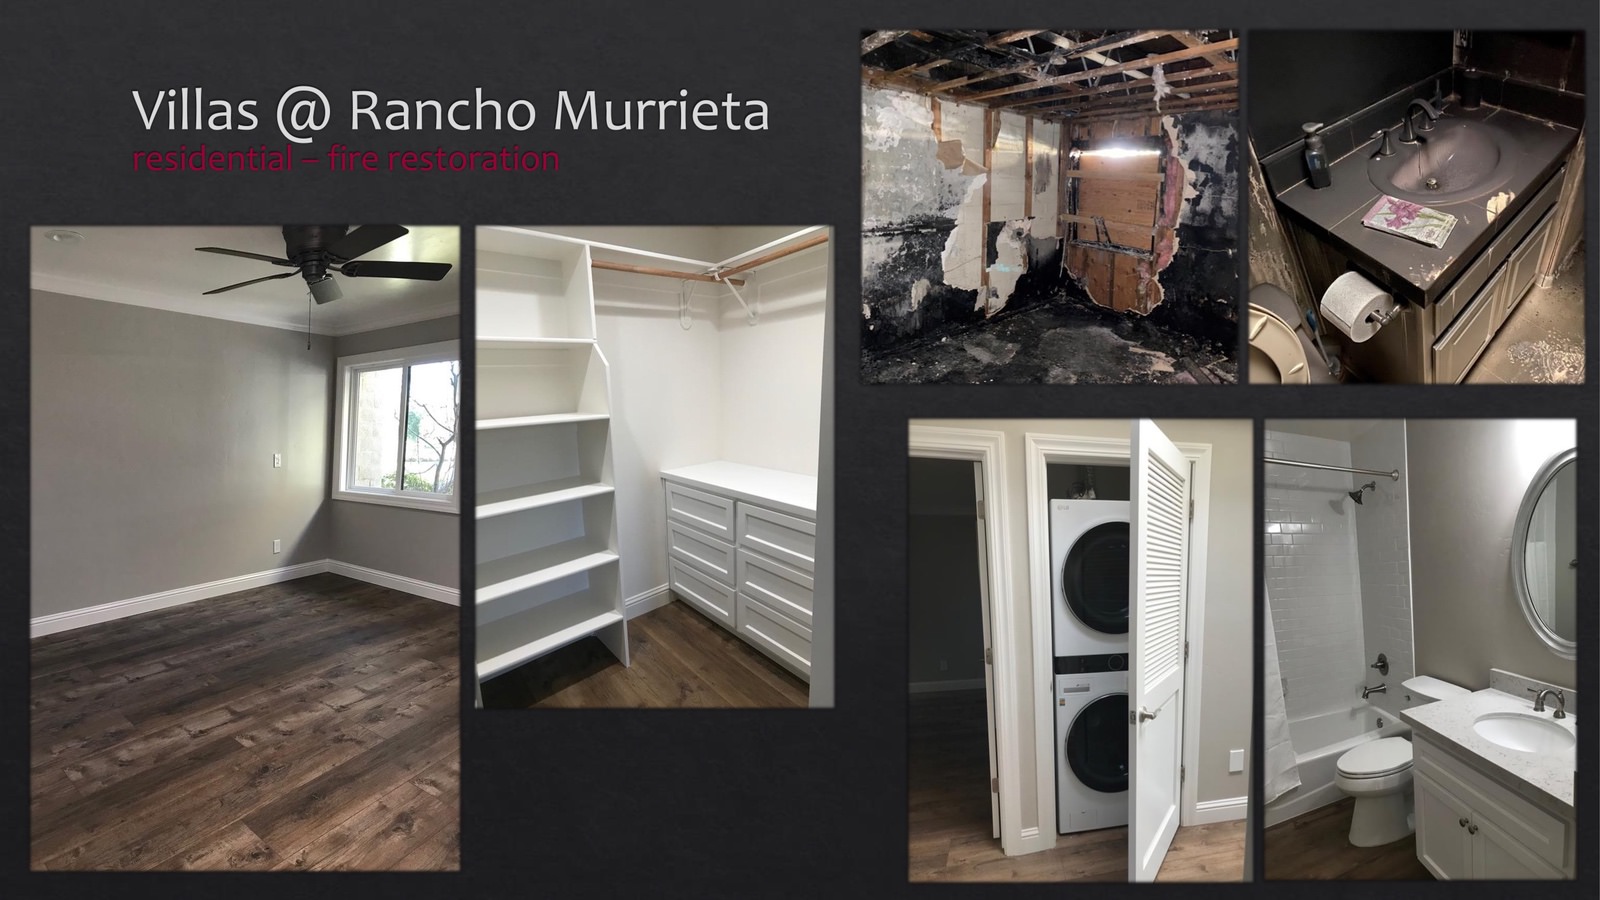 Rancho Murrieta Villas Residential fire restoration - bathroom and bedroom